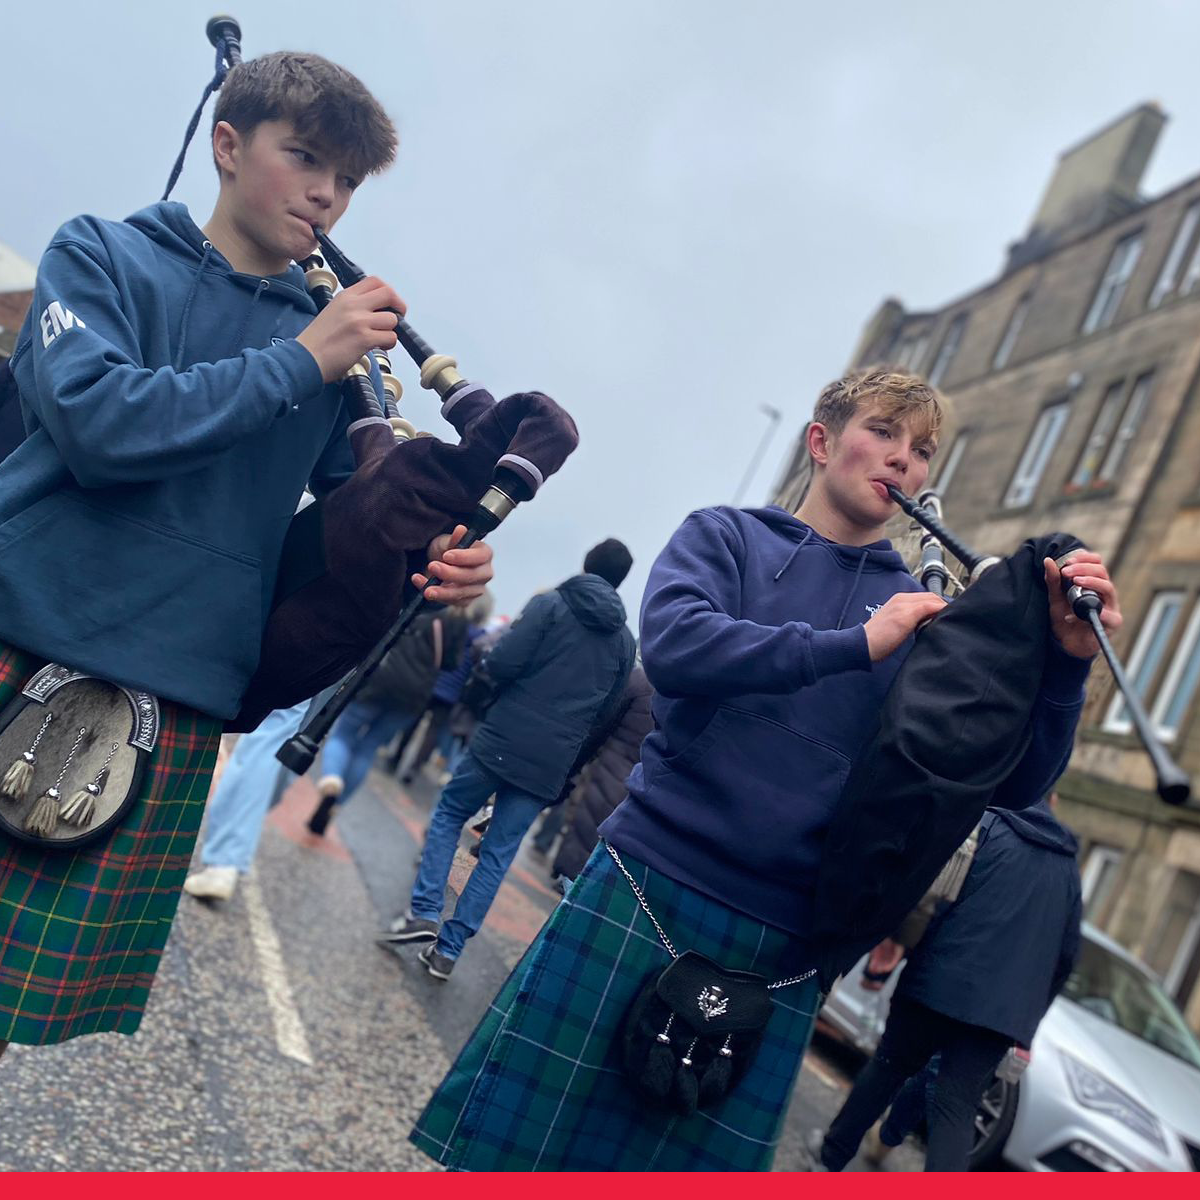 jeunes ecossais jouant de la cornemuse apperçus lors du séjour à edimbourg